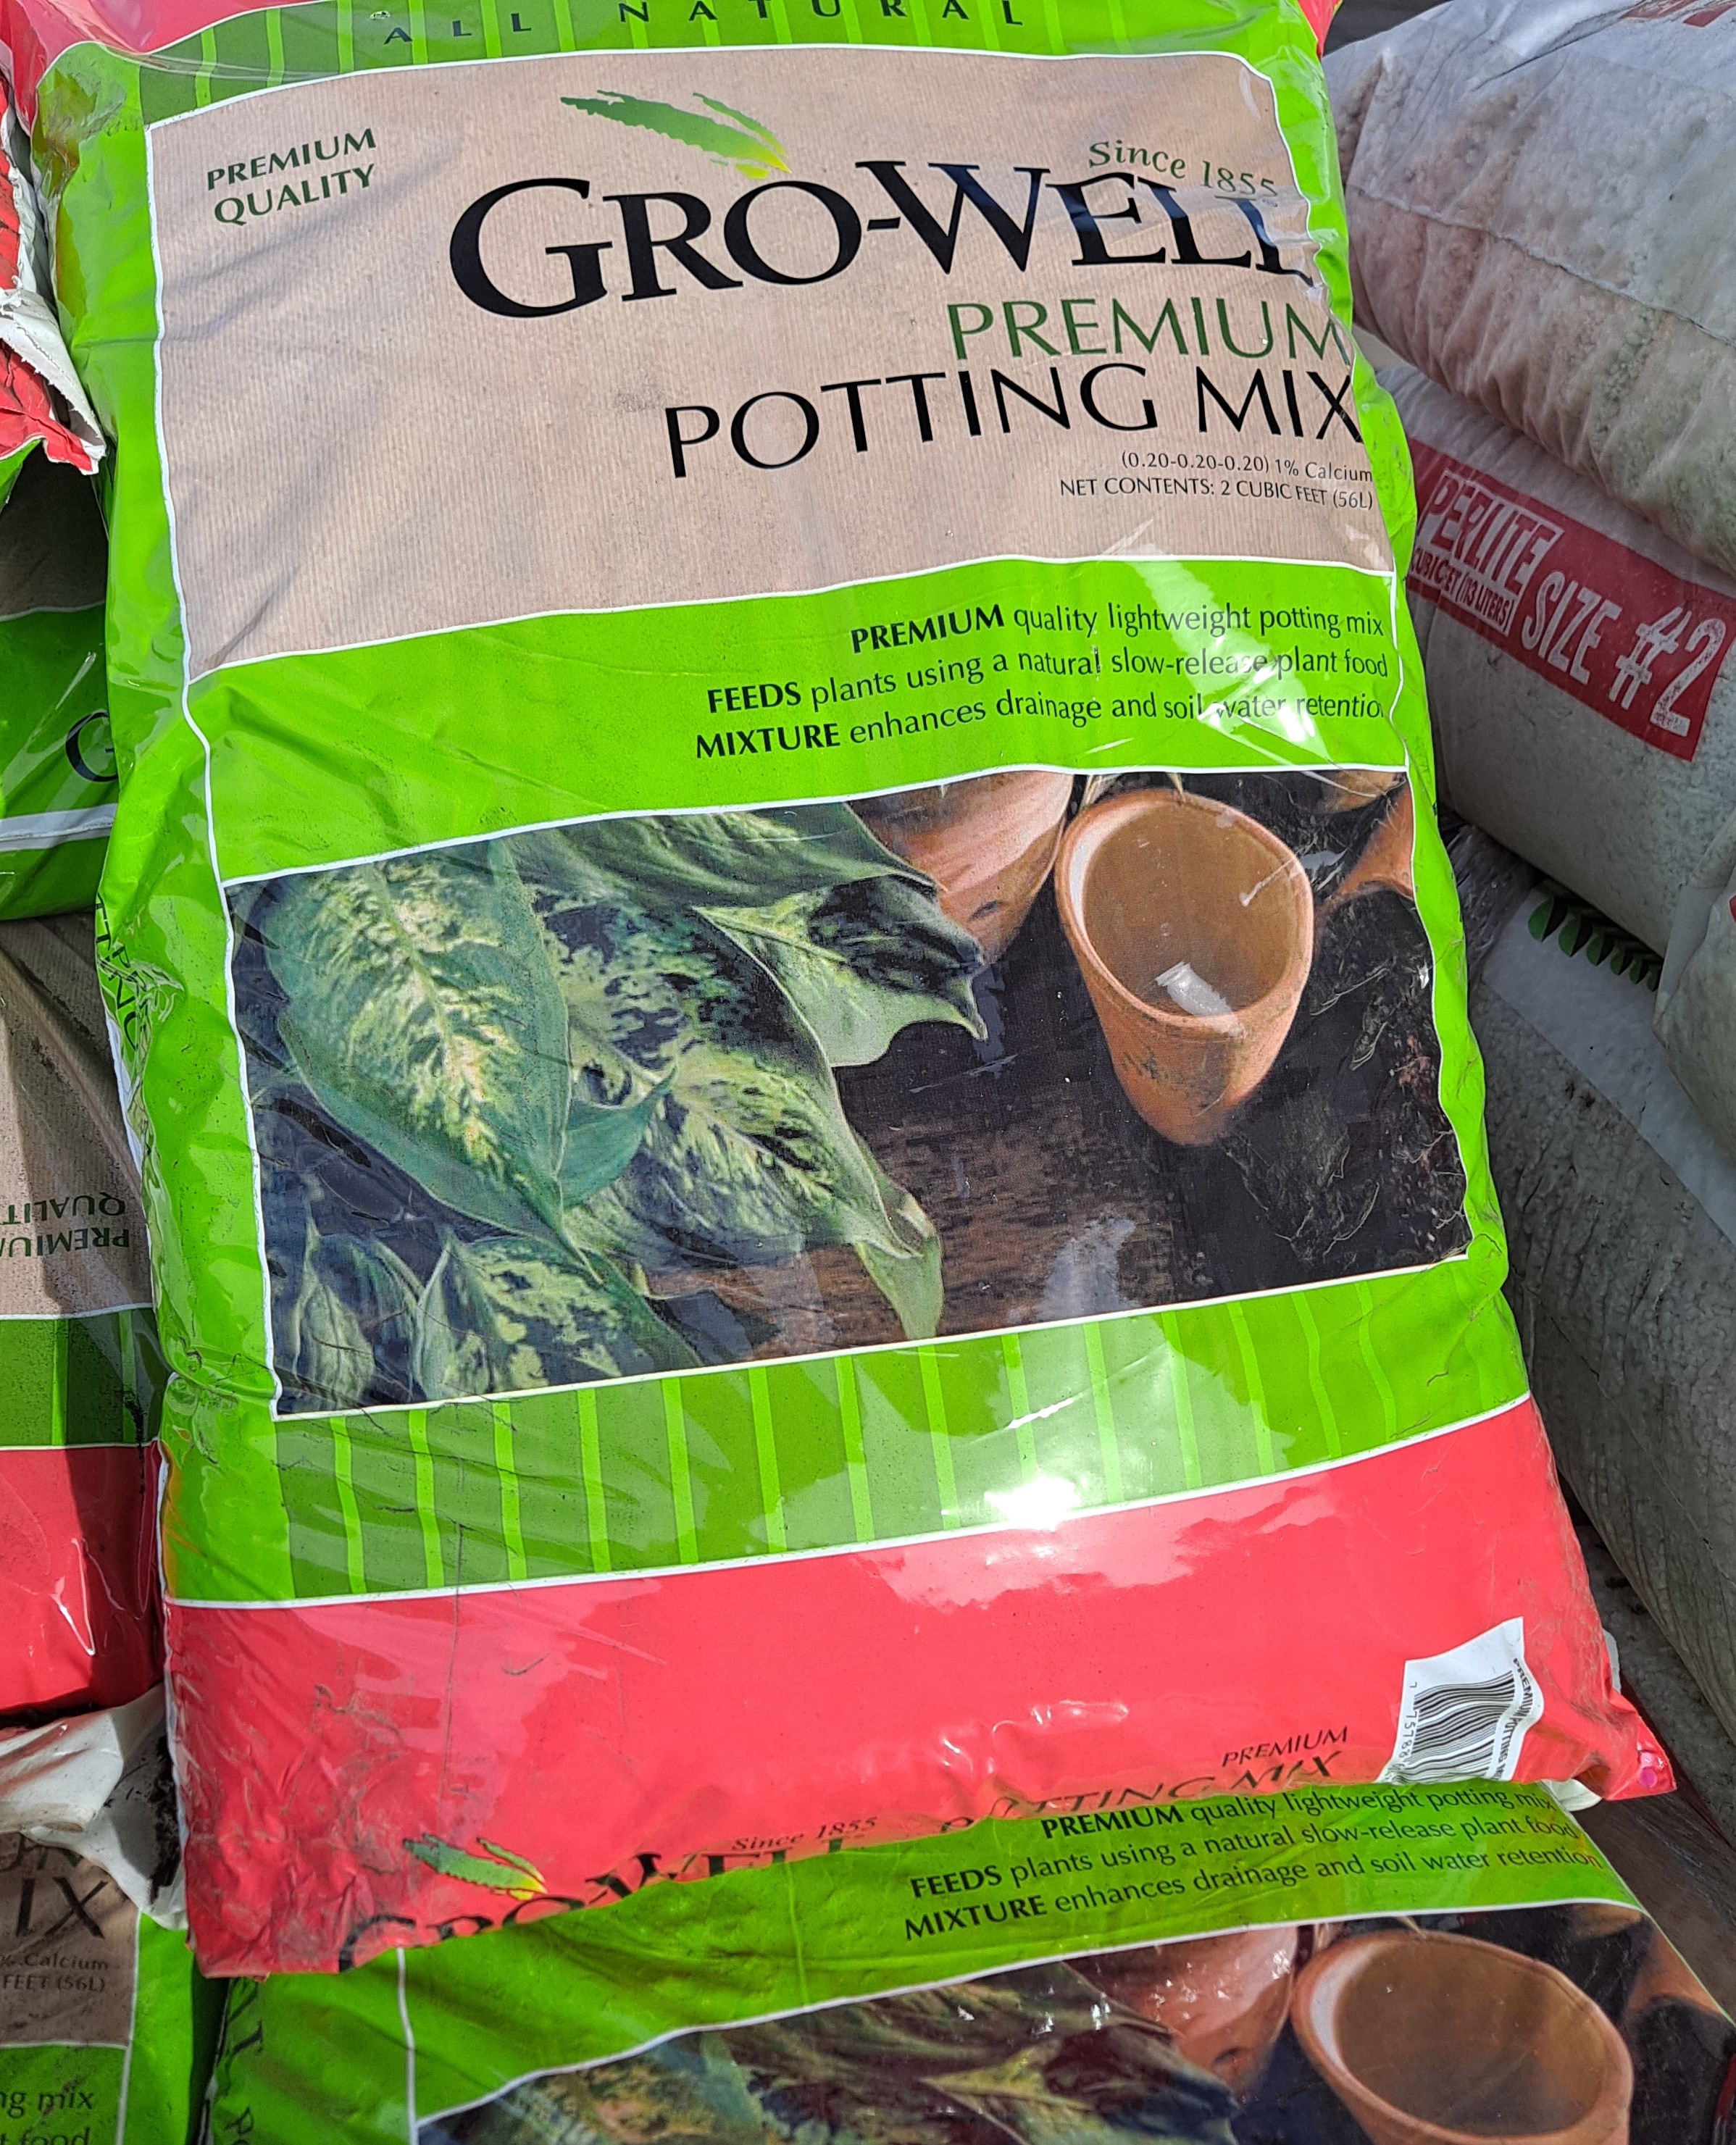 Premium Potting Soil, 50 quart bag.